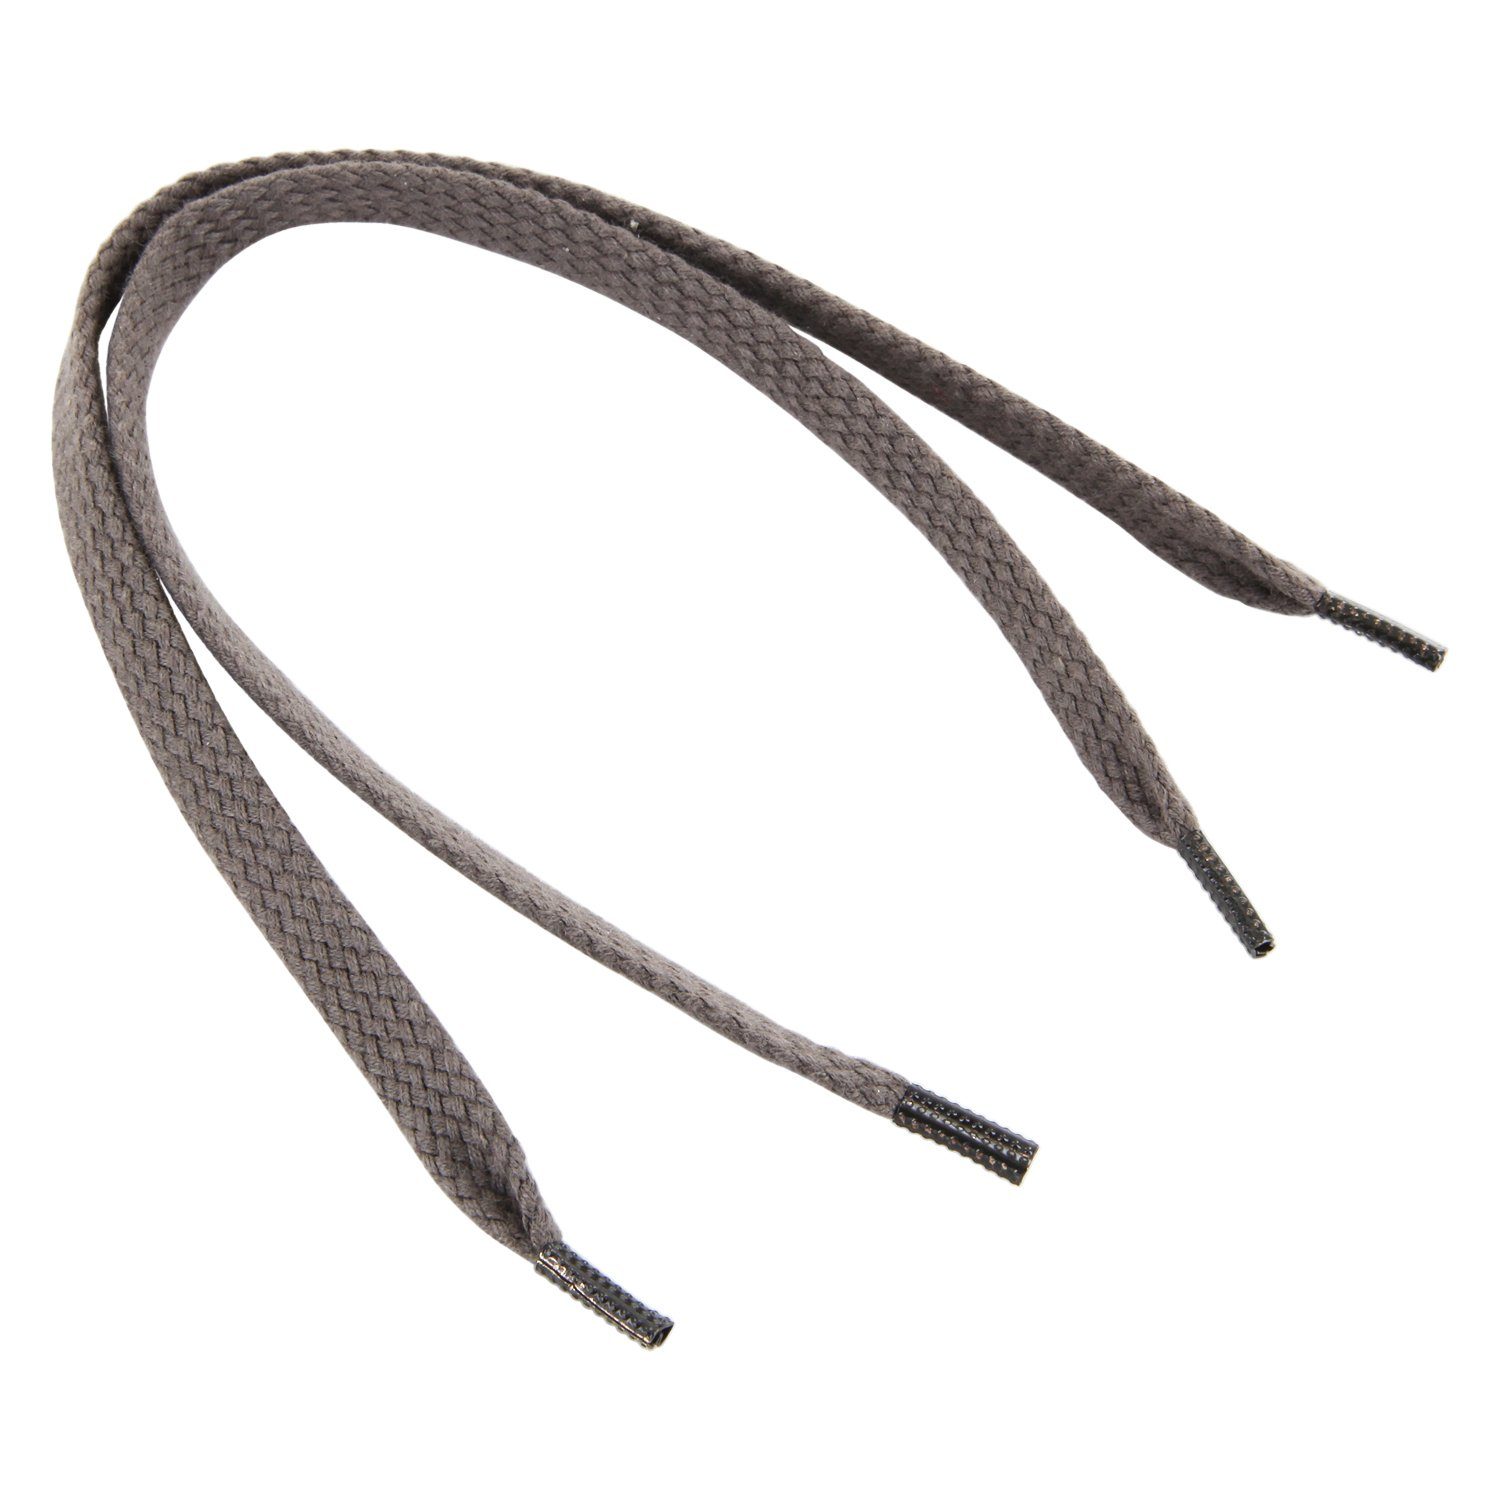 Rema Schnürsenkel Rema Schnürsenkel Dunkelgrau - flach - ca. 6-7 mm breit für Sie nach Wunschlänge geschnitten und mit Metallenden versehen